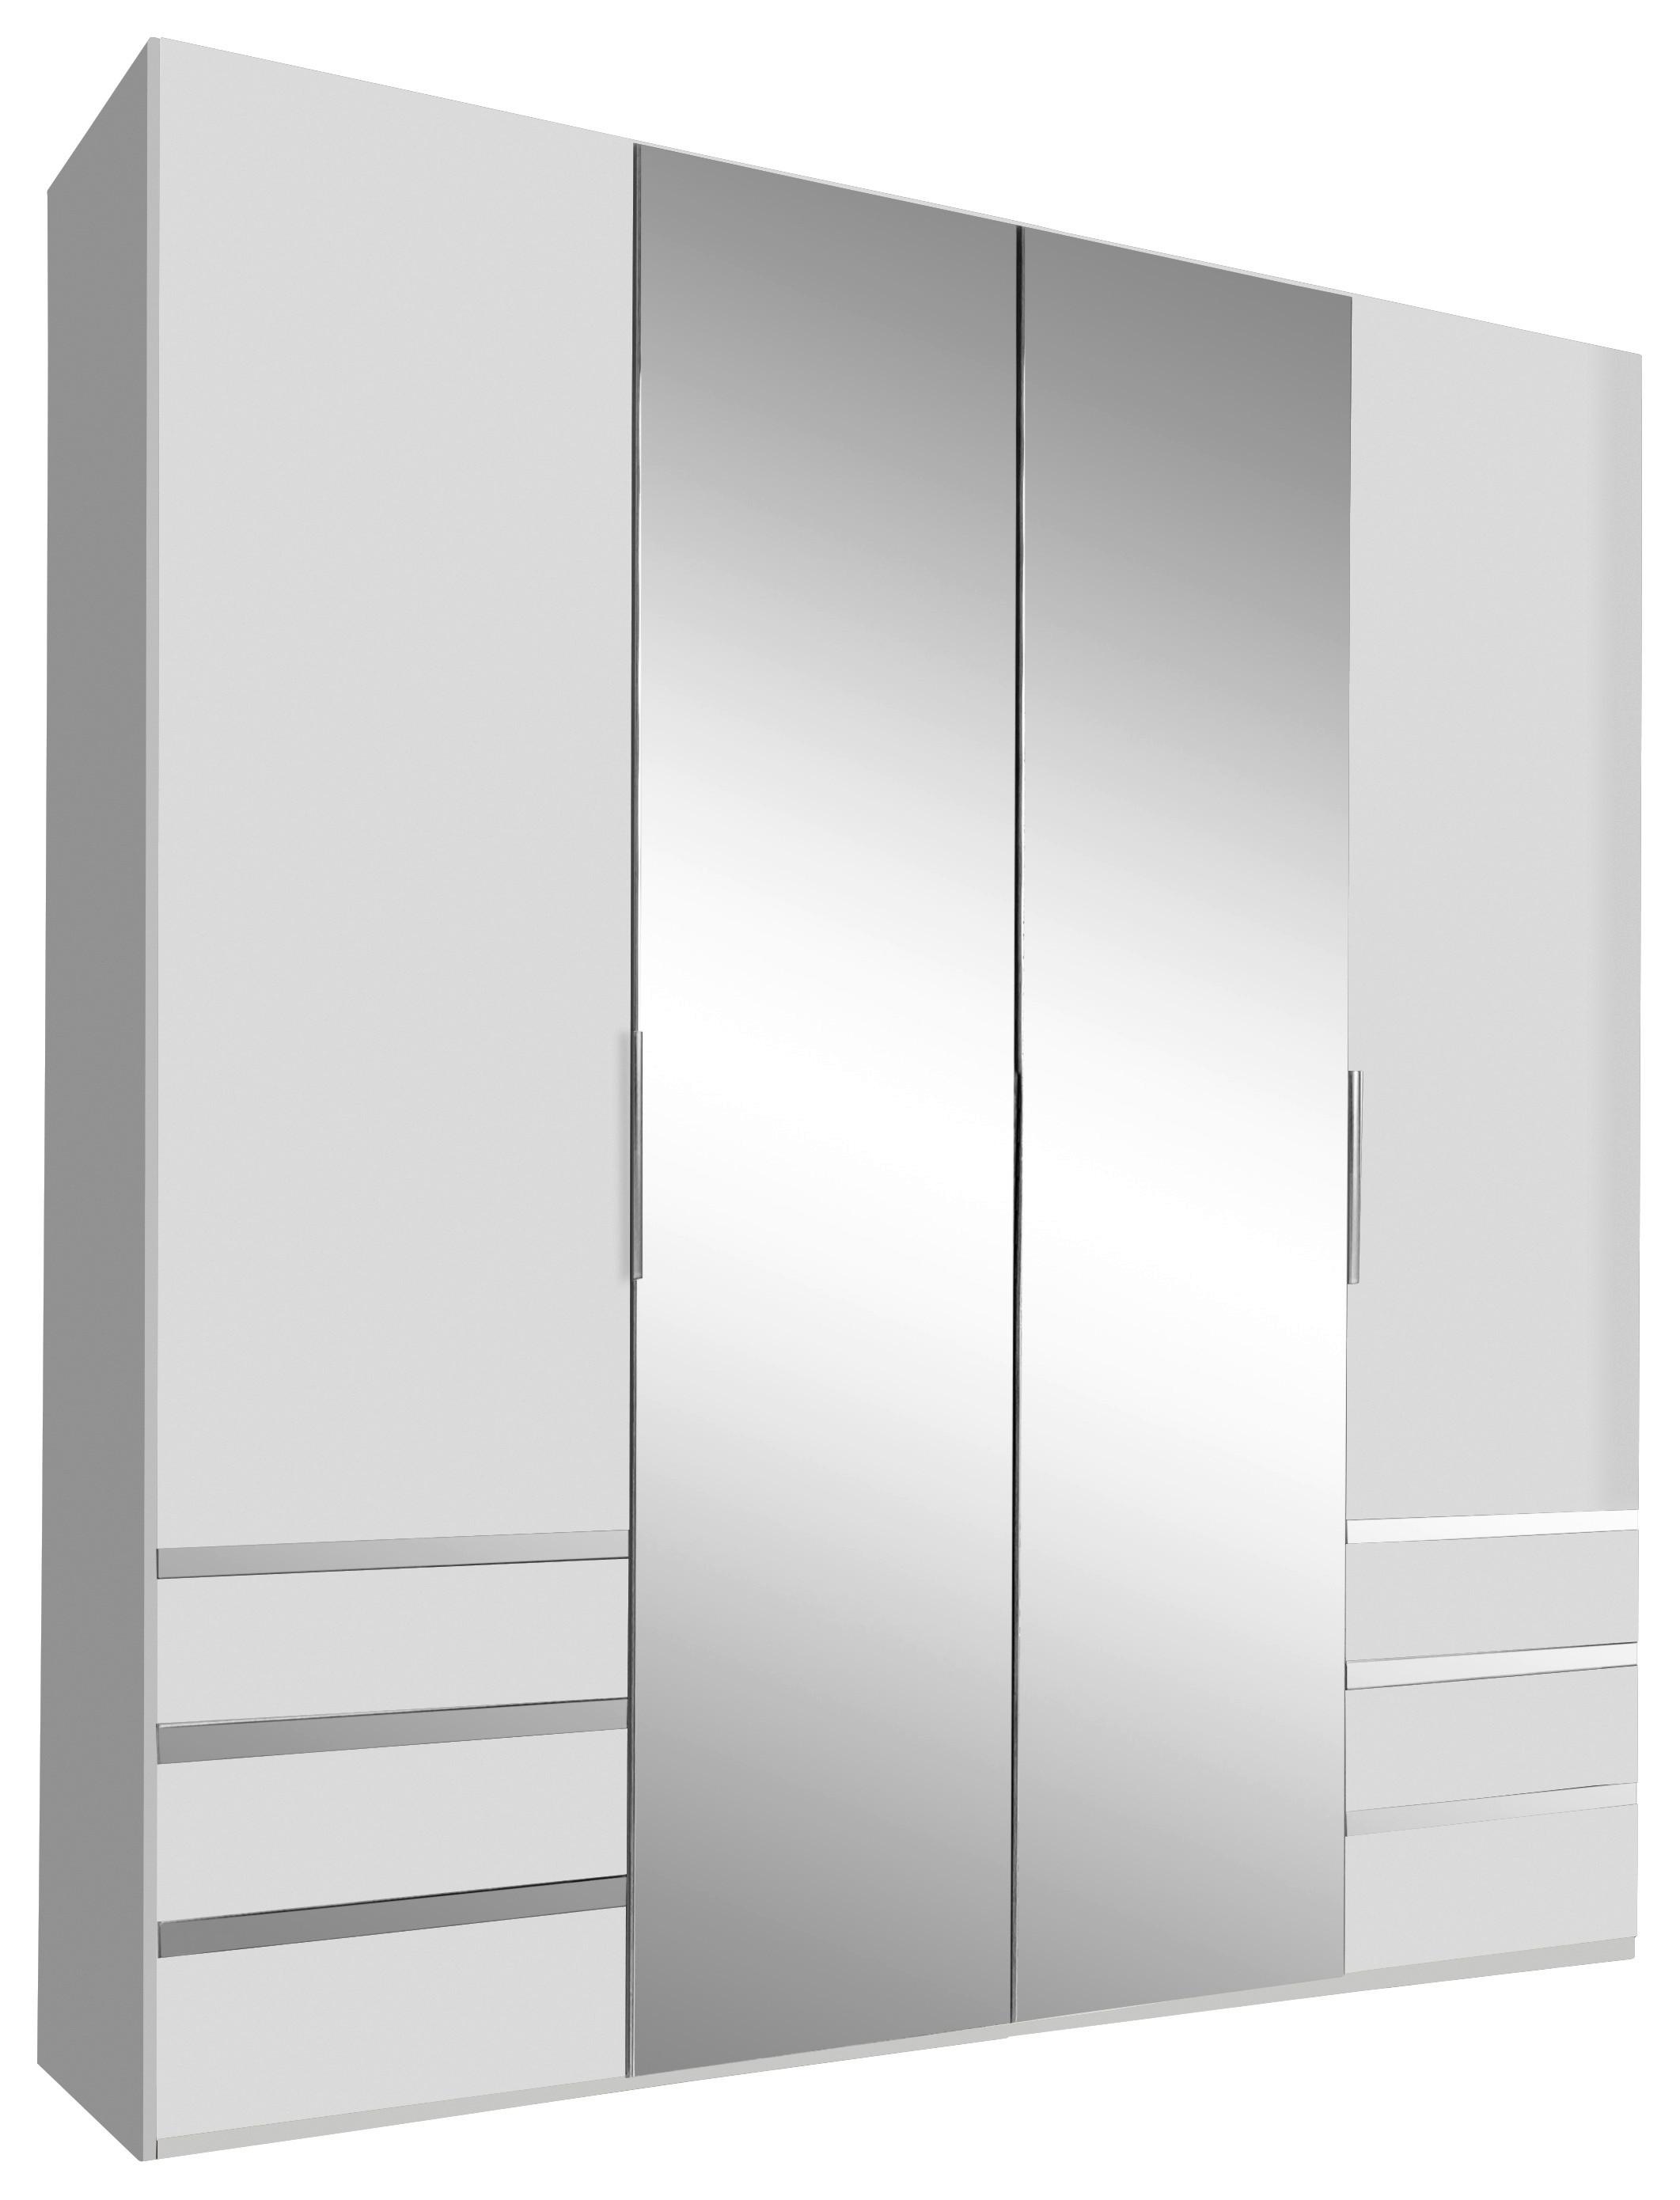 Drehtürenschrank Mit Spiegel 200cm Level 36a, Weiß Dekor - Weiß, MODERN, Glas/Holzwerkstoff (200/216/58cm) - MID.YOU